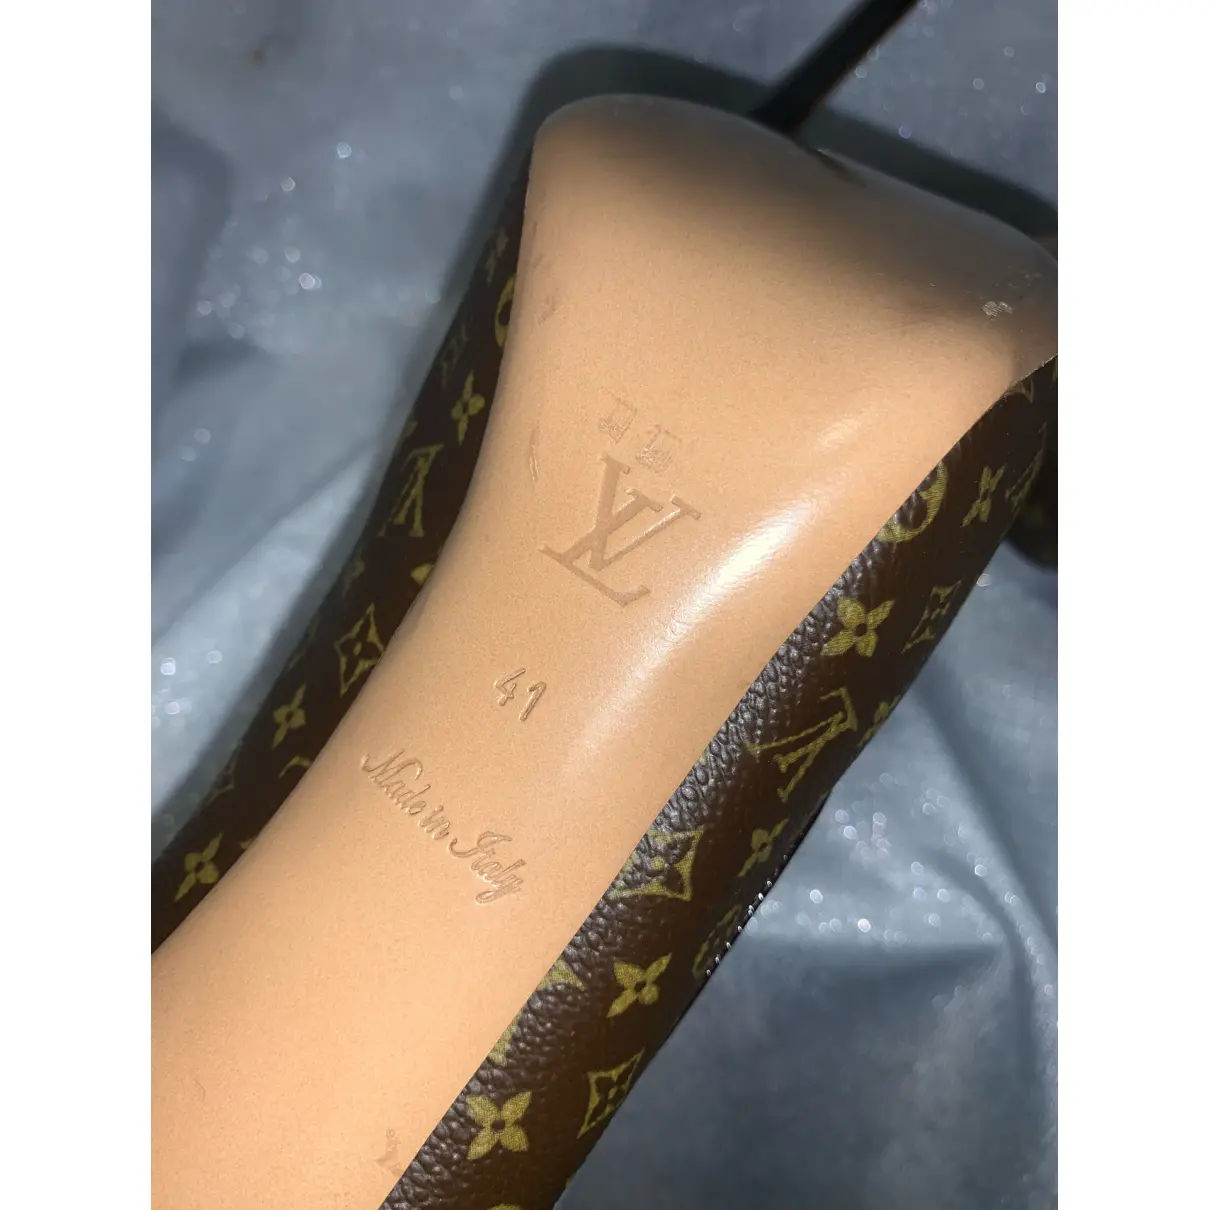 Chérie patent leather heels Louis Vuitton